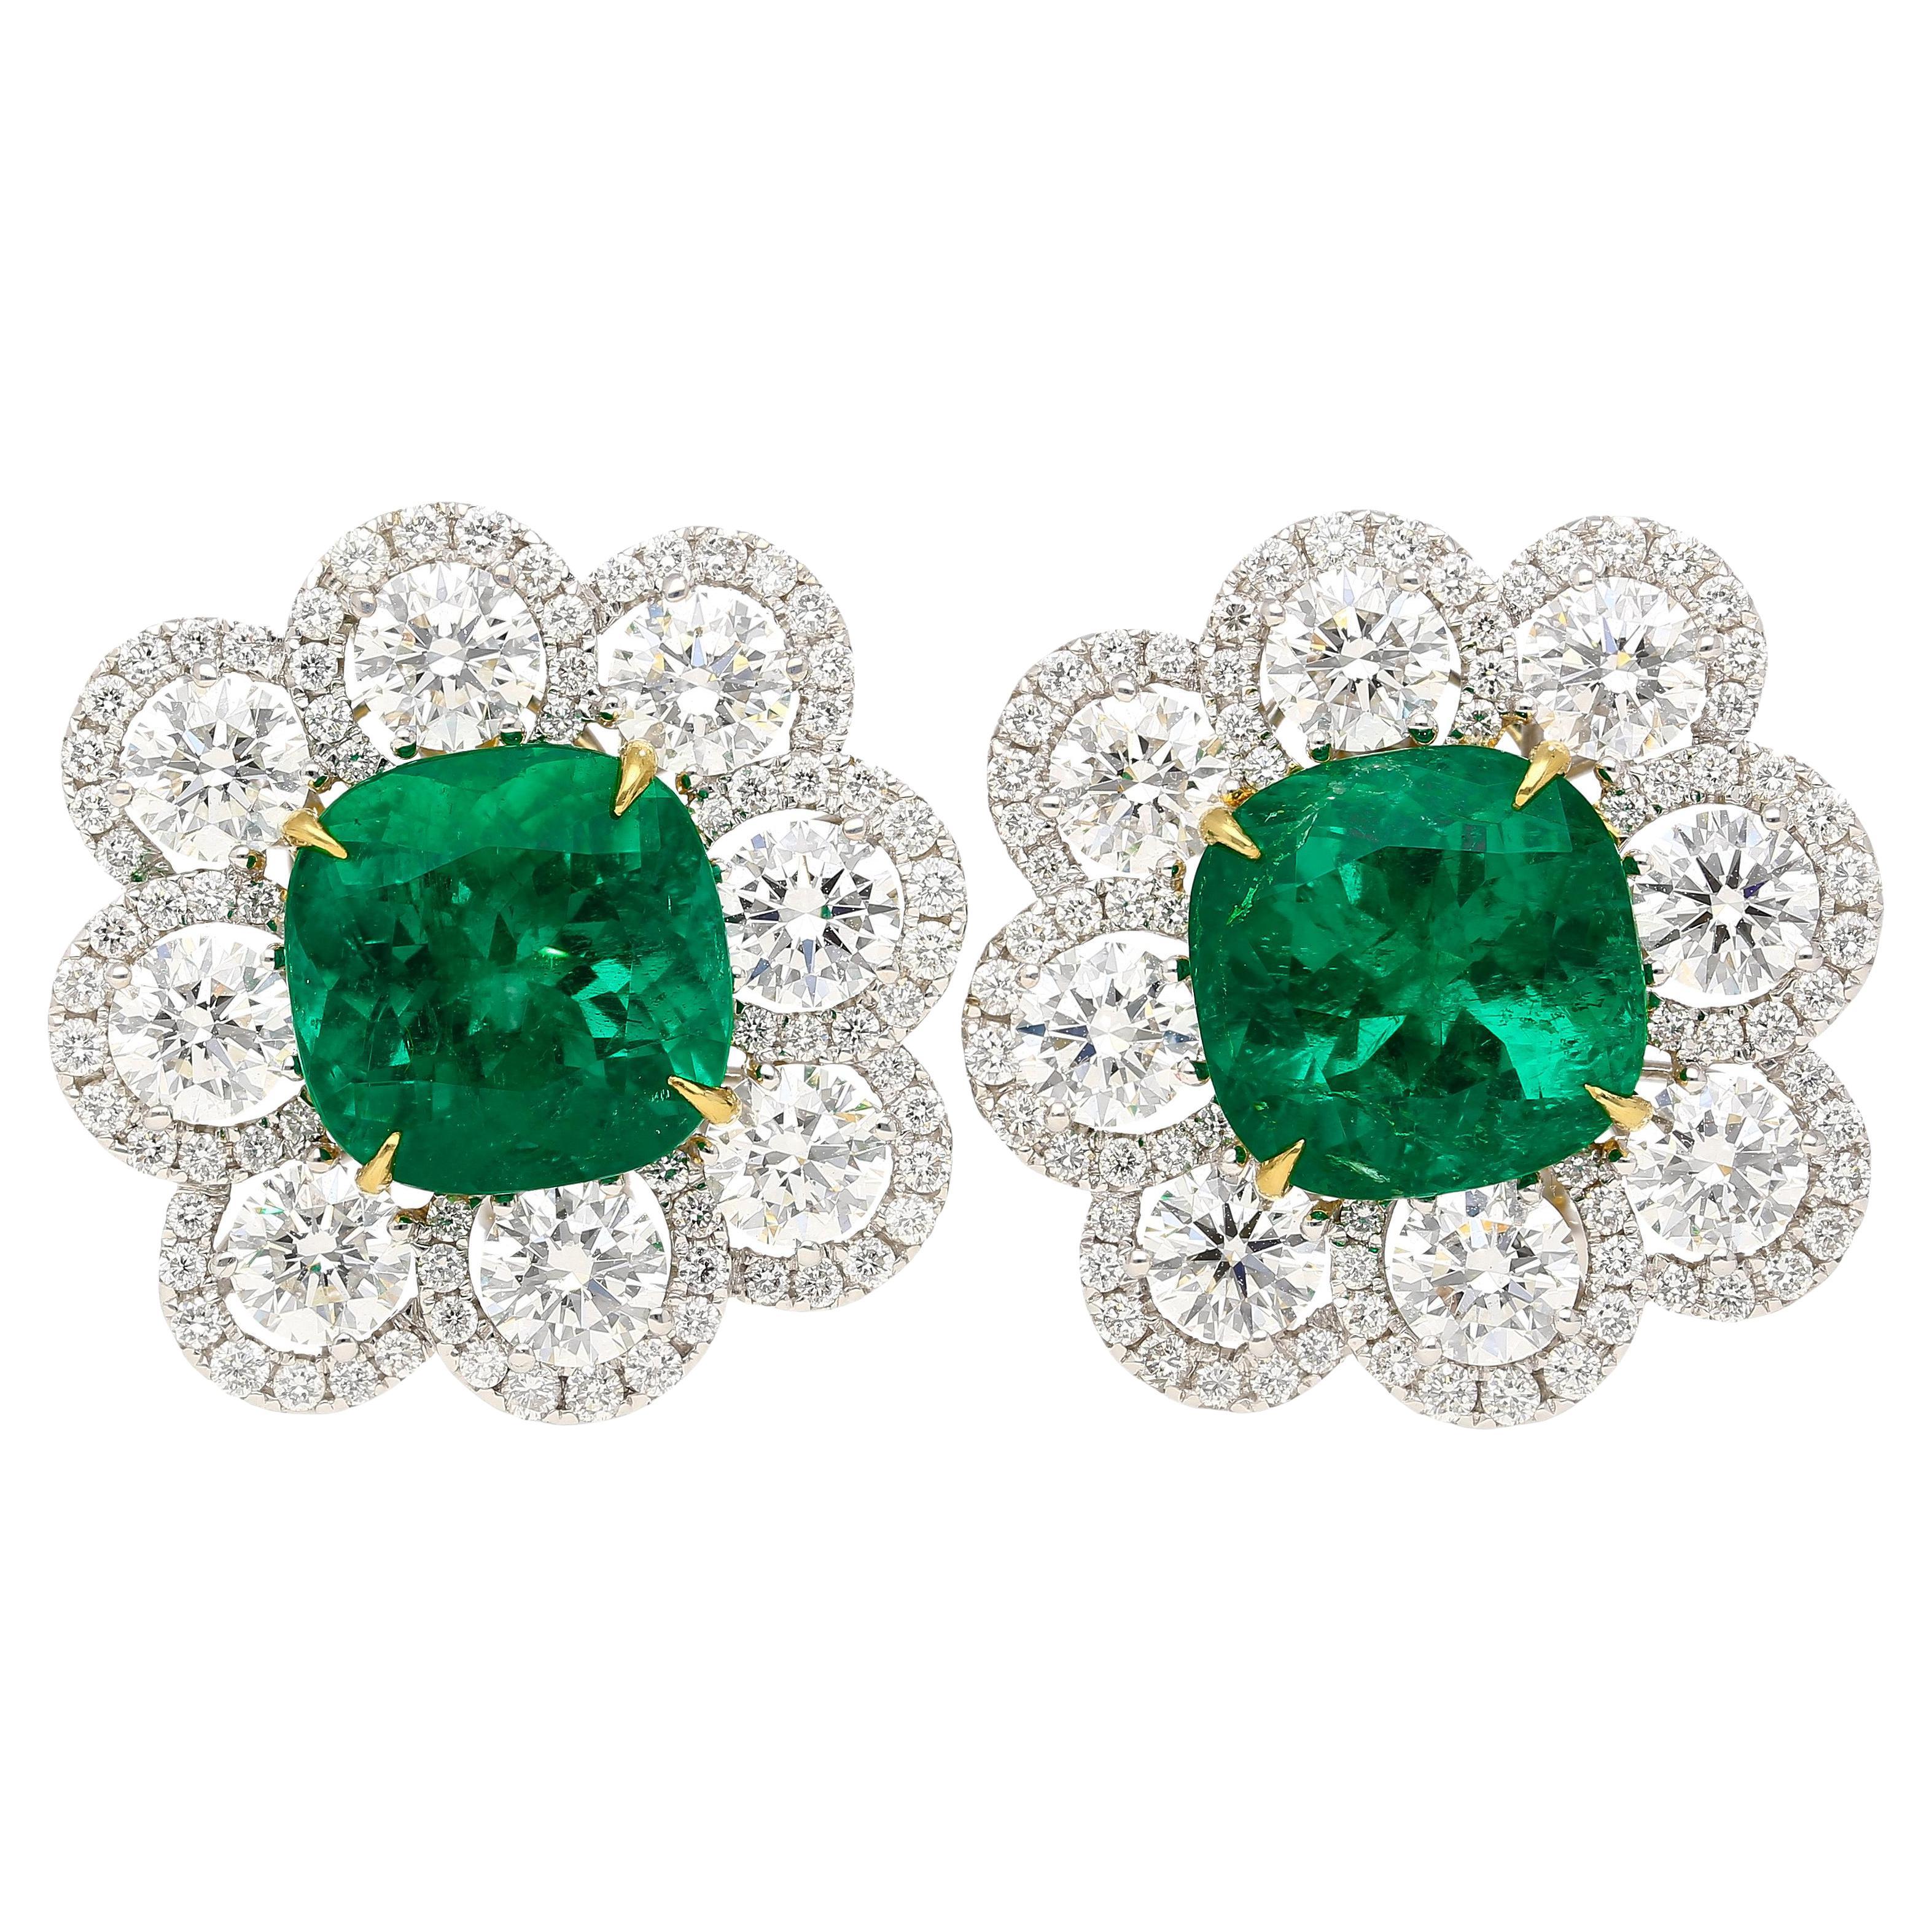 10 Carat Colombian Emerald GRS Certified Cushion Cut Minor Oil Diamond Earrings For Sale